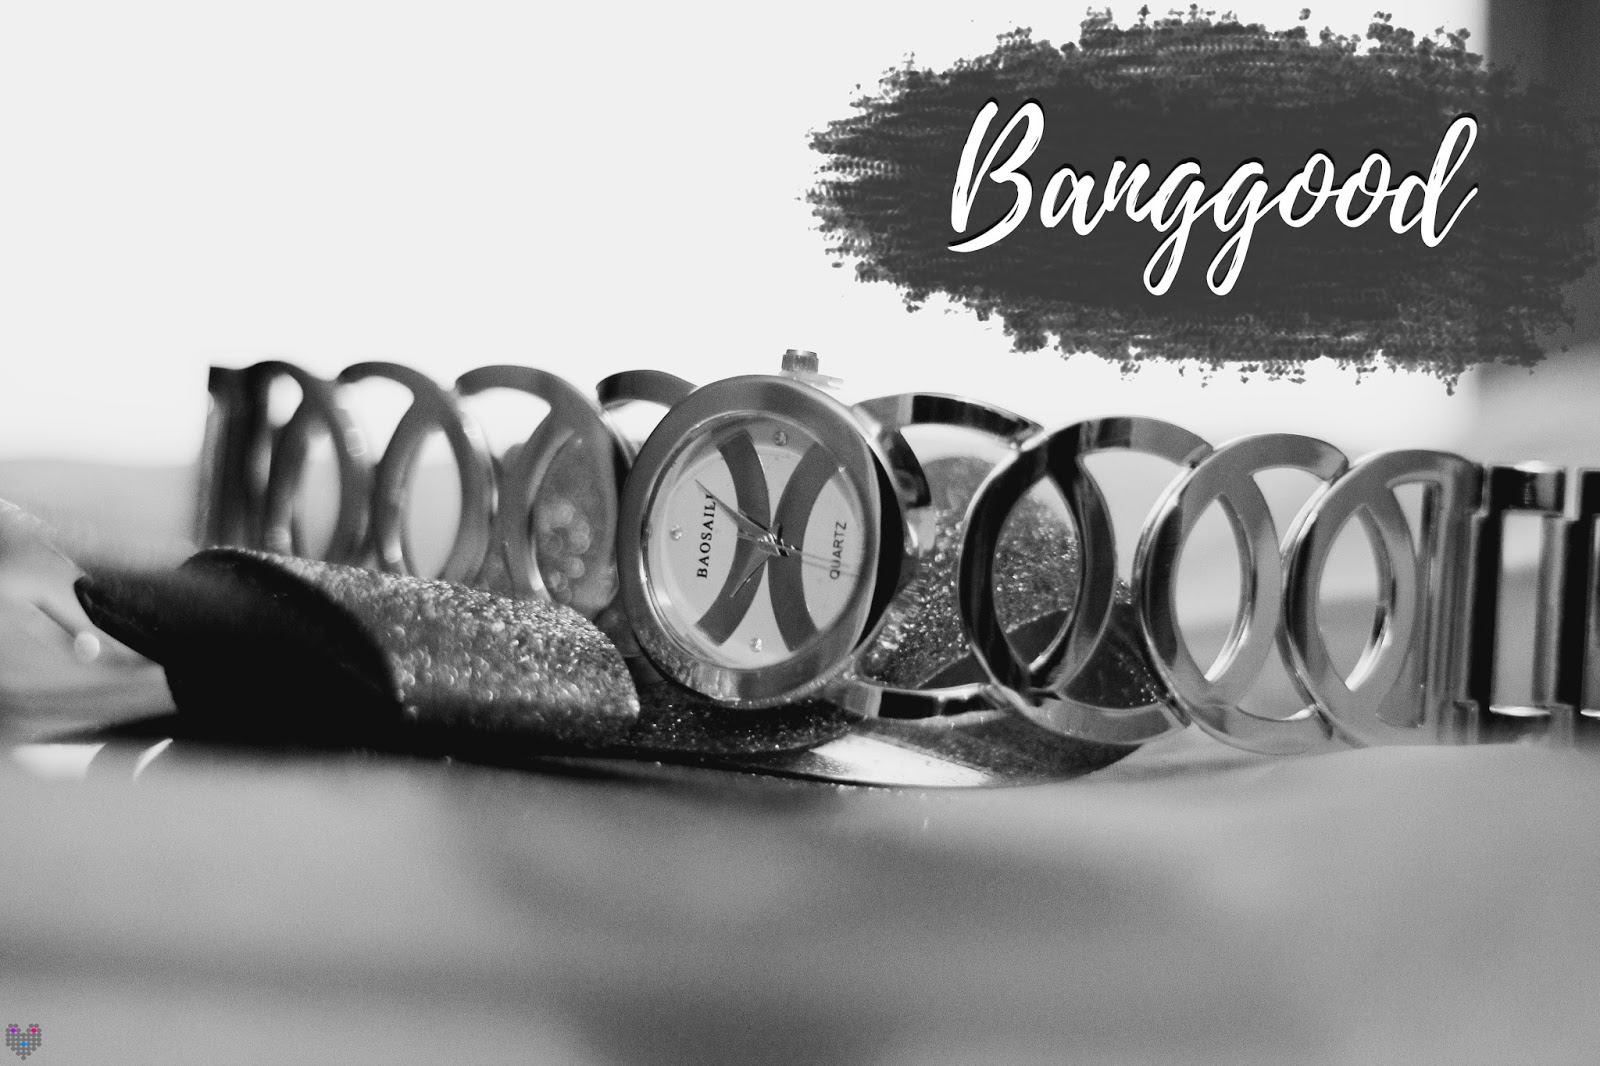 Banggood - Lovett Lov